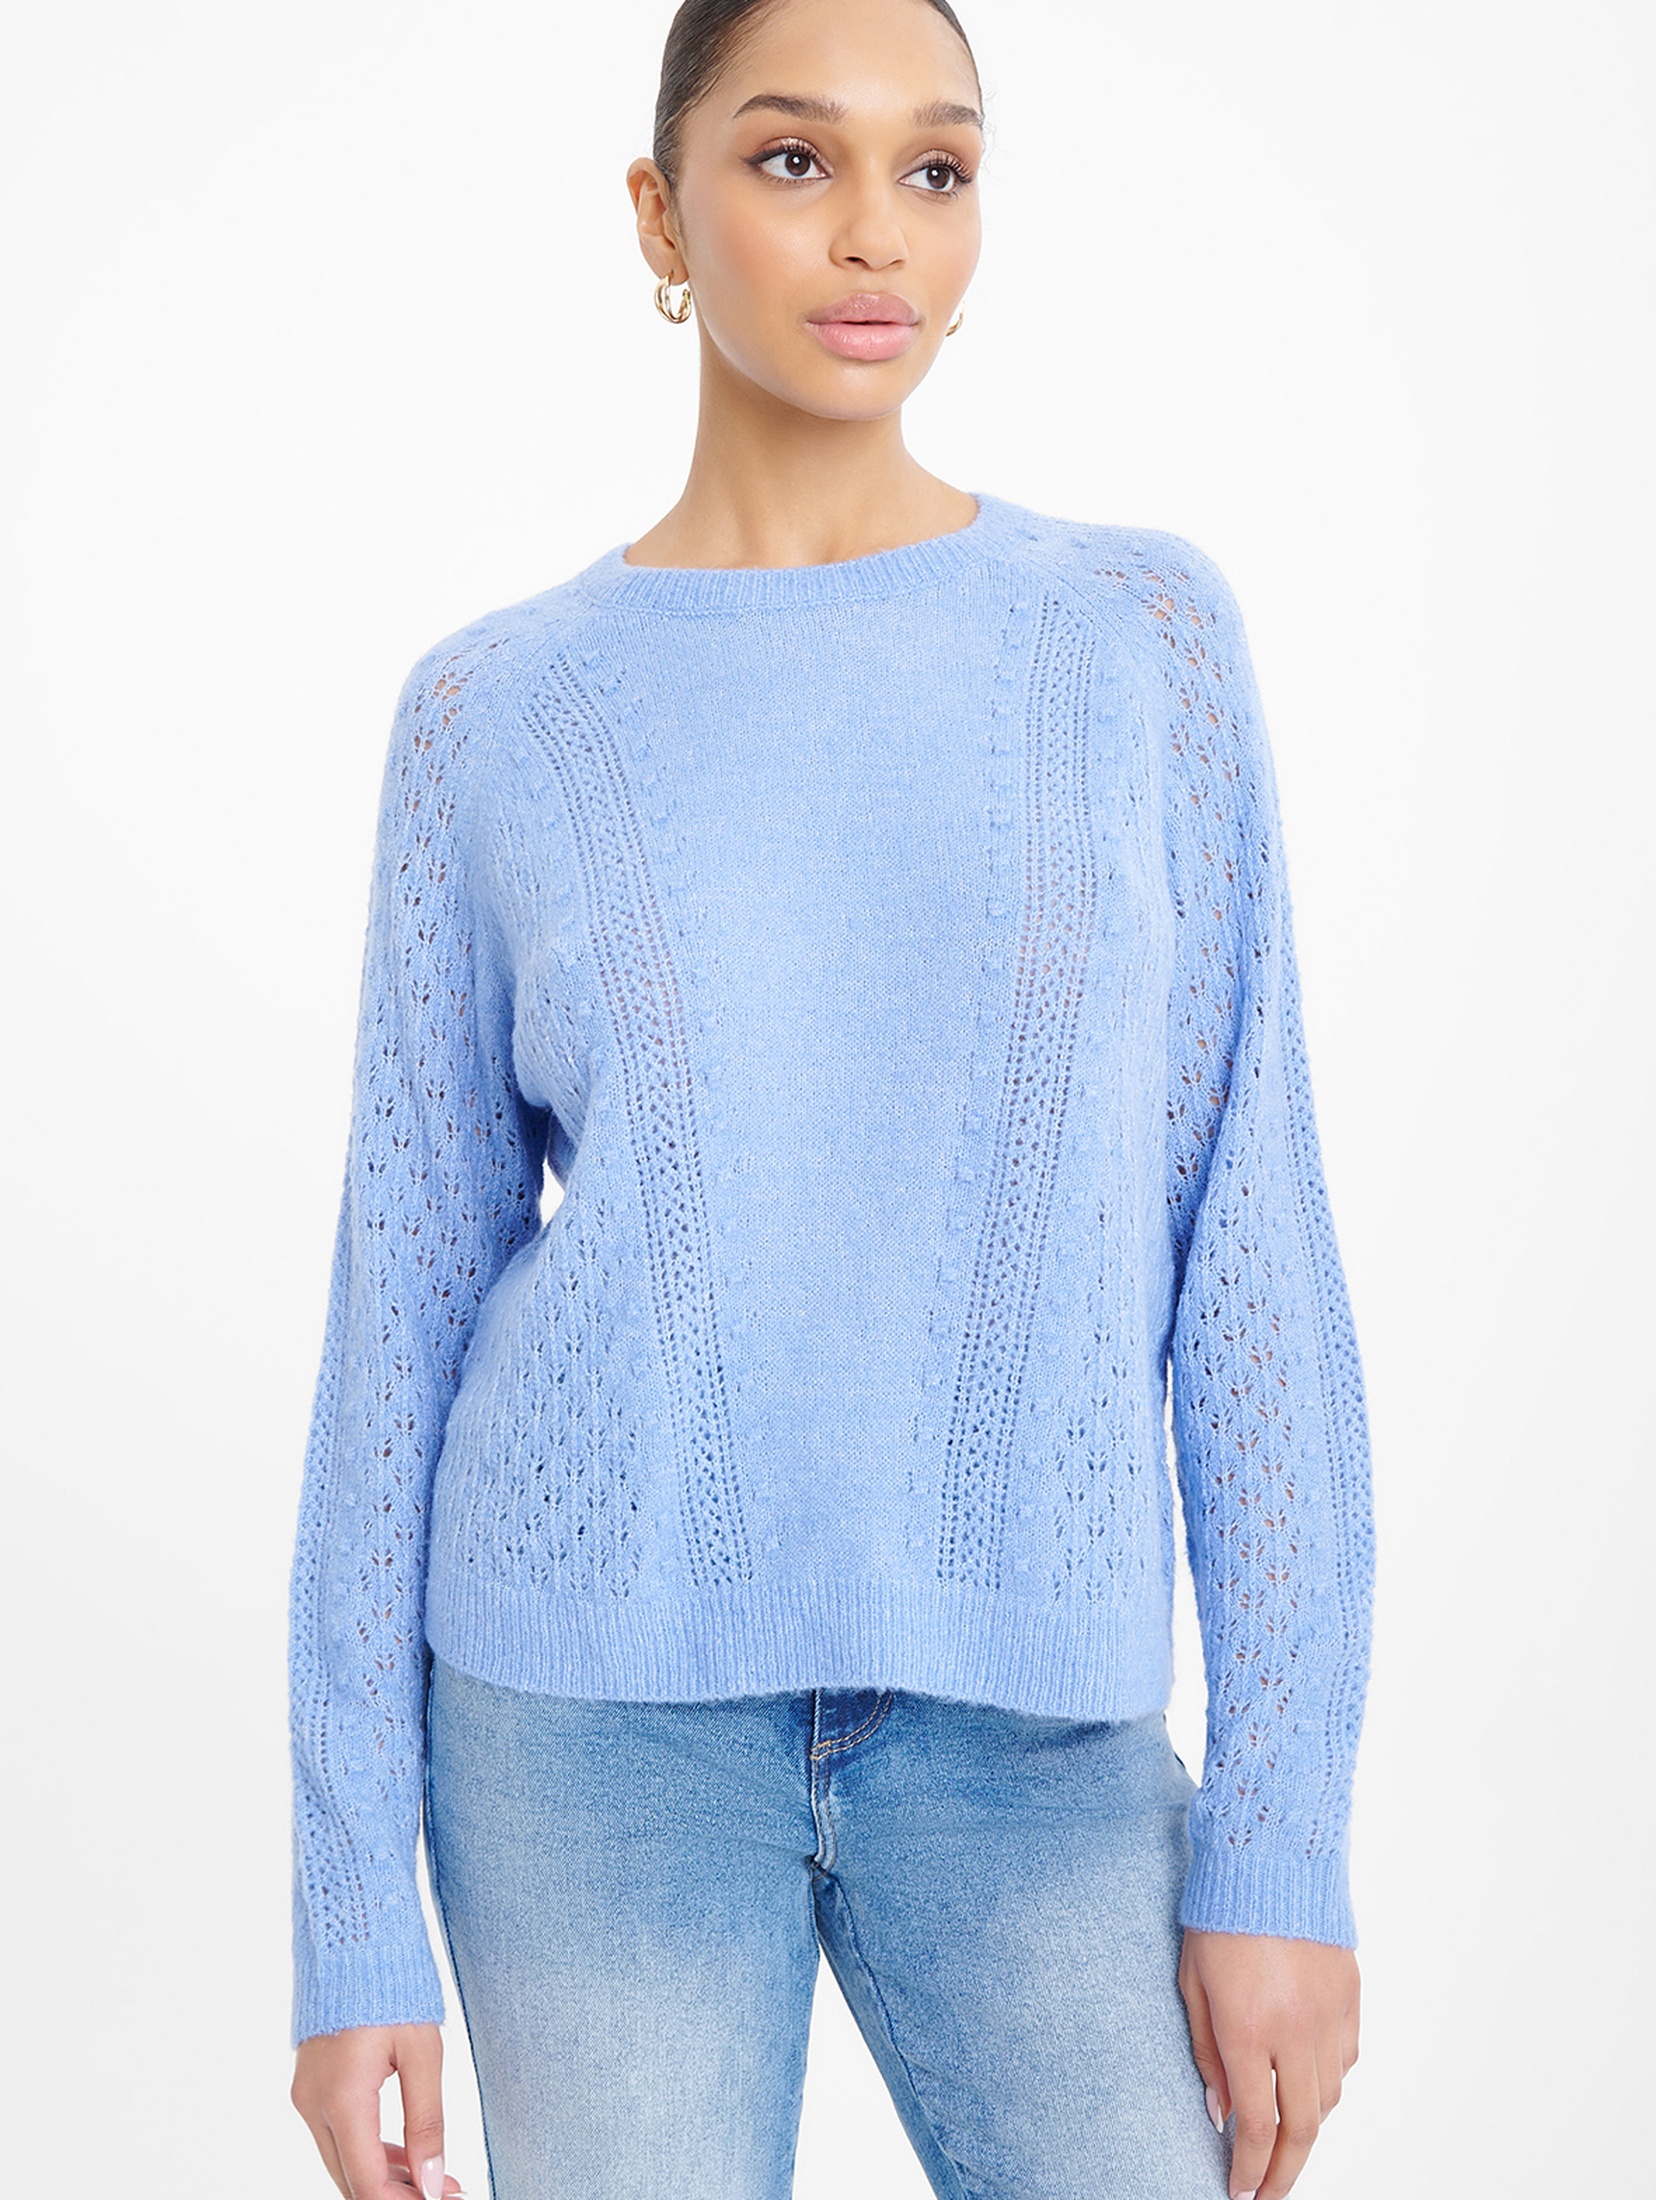 Sweter nierozpinany damski niebieski